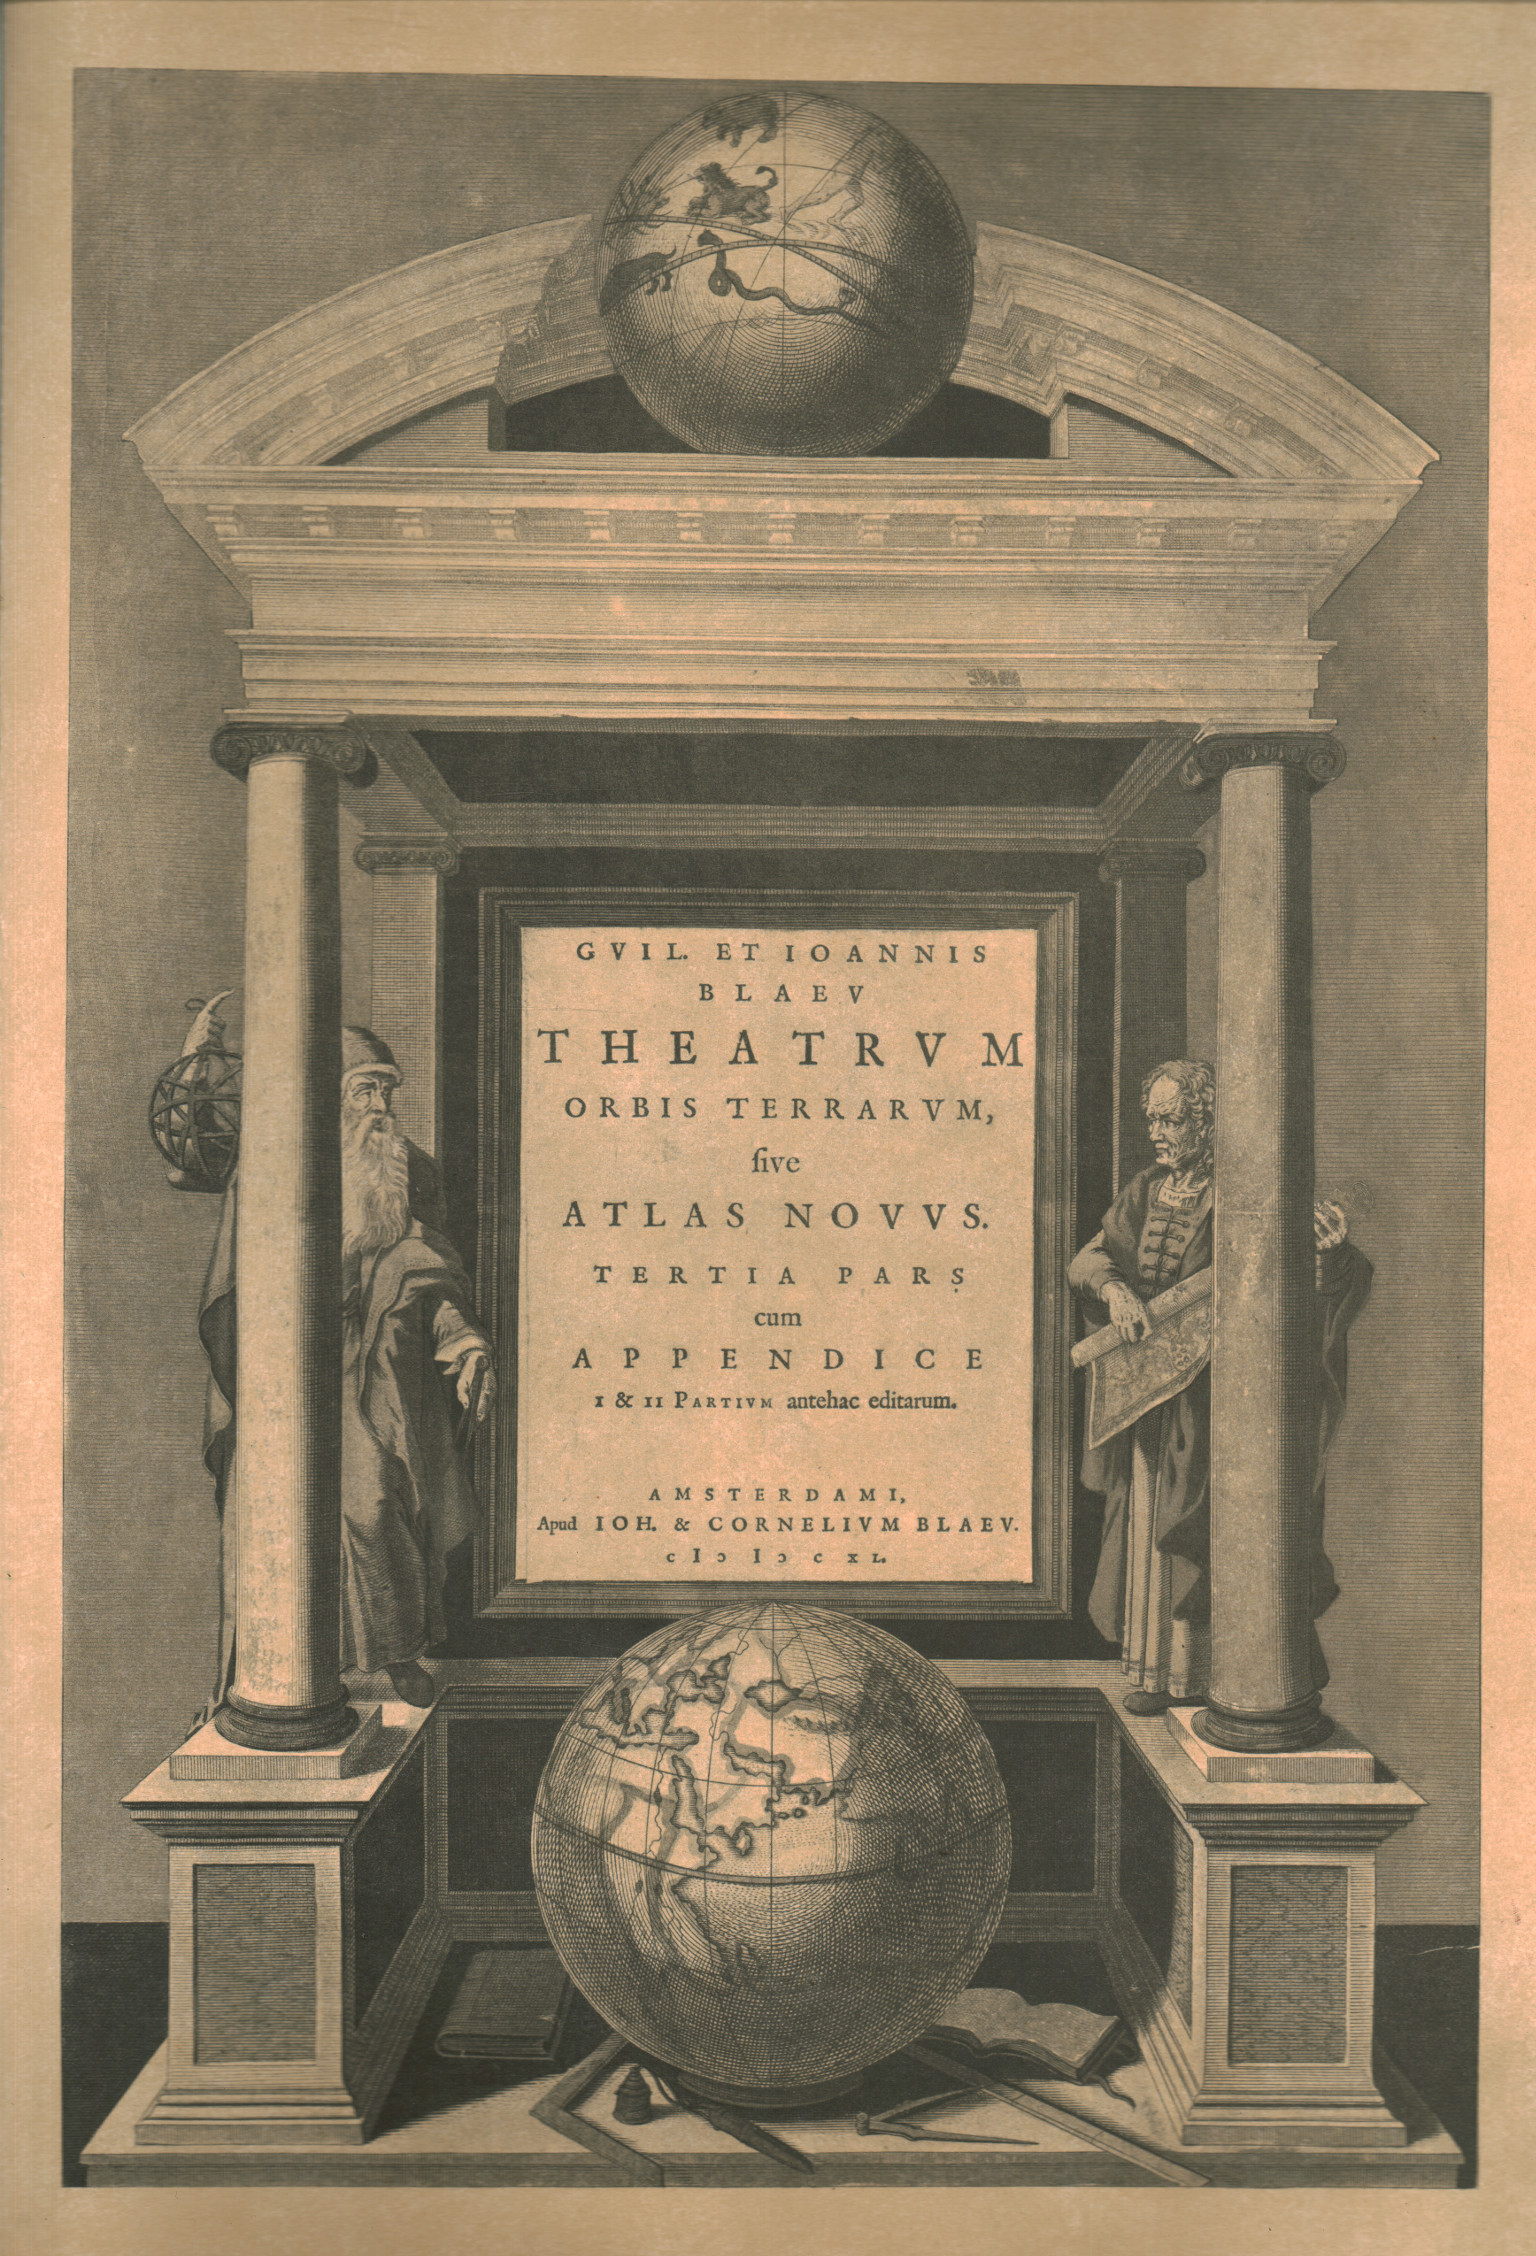 Theatrum,Theatrum orbis terrarum sive atlas novu,Theatrum orbis terrarum sive atlas novu,Theatrum orbis terrarum sive atlas novu